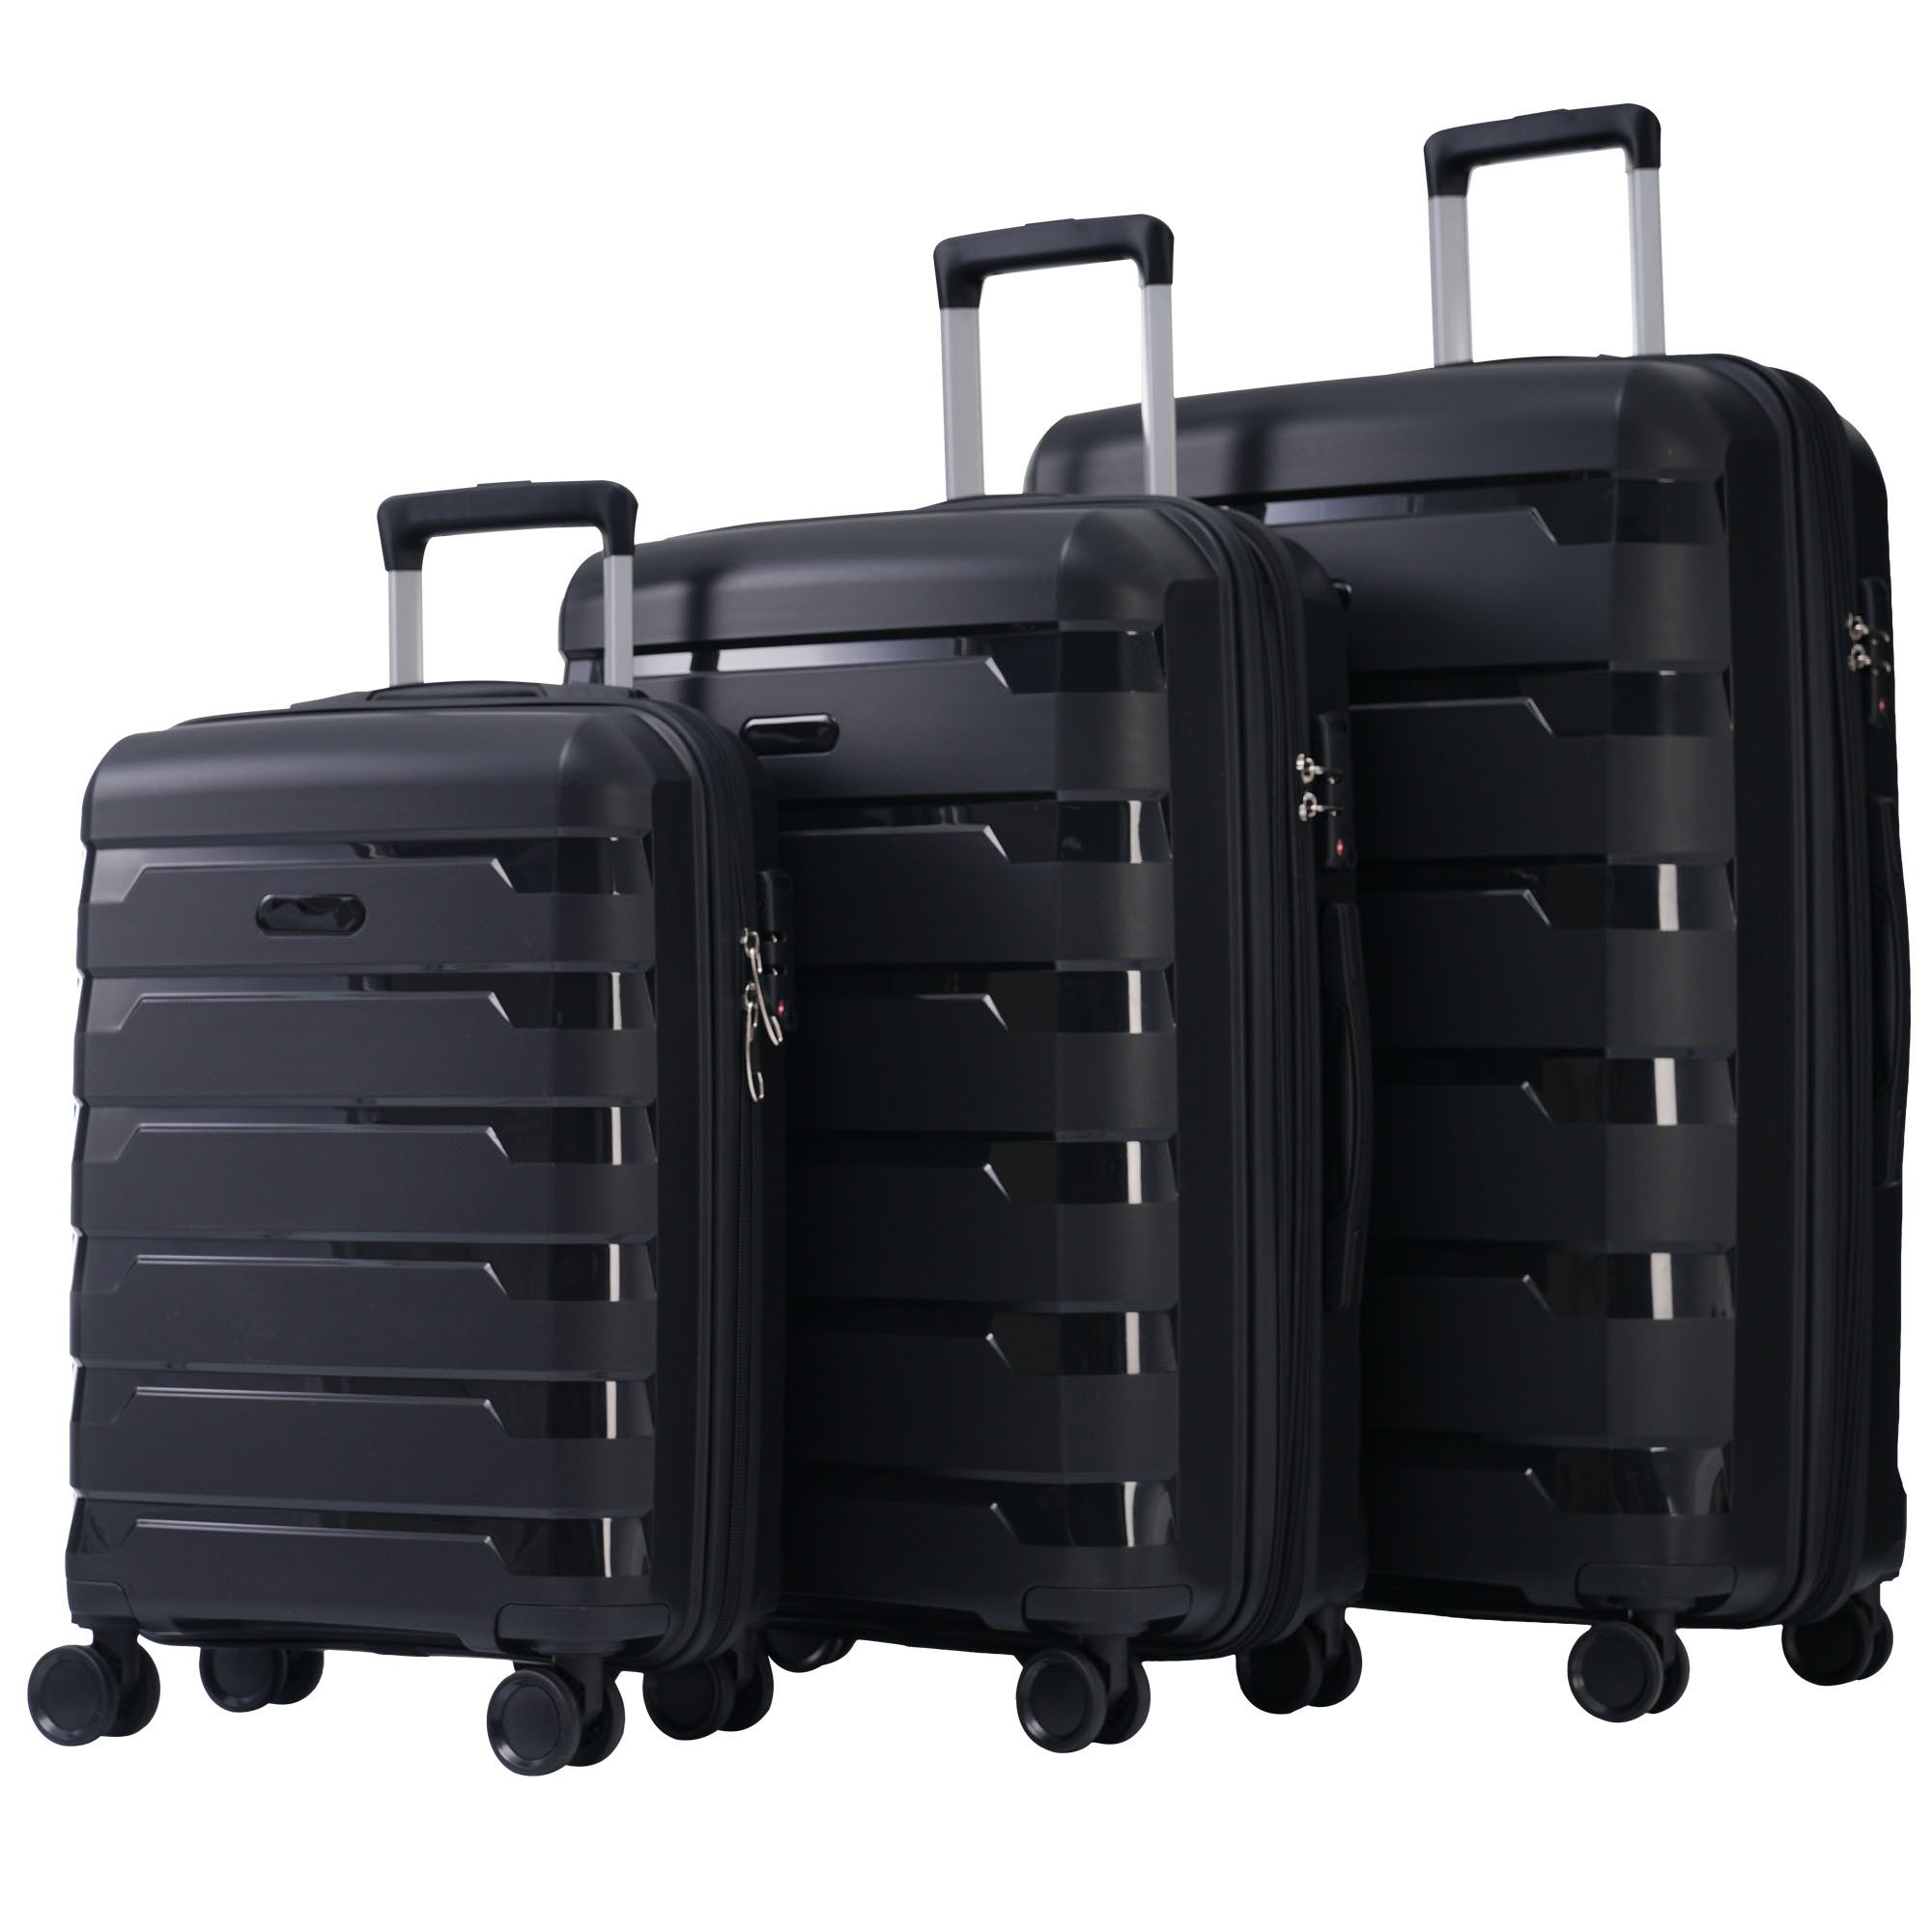 Blusmart Kofferset 3-teiliges M-L-XL-Koffer, 4 Rollen, (Robust, leicht und stilvoll, 3 tlg., Hartschalentrolley Reisekoffer), Universal- und Doppelrädern sowie TSA-Schlössern